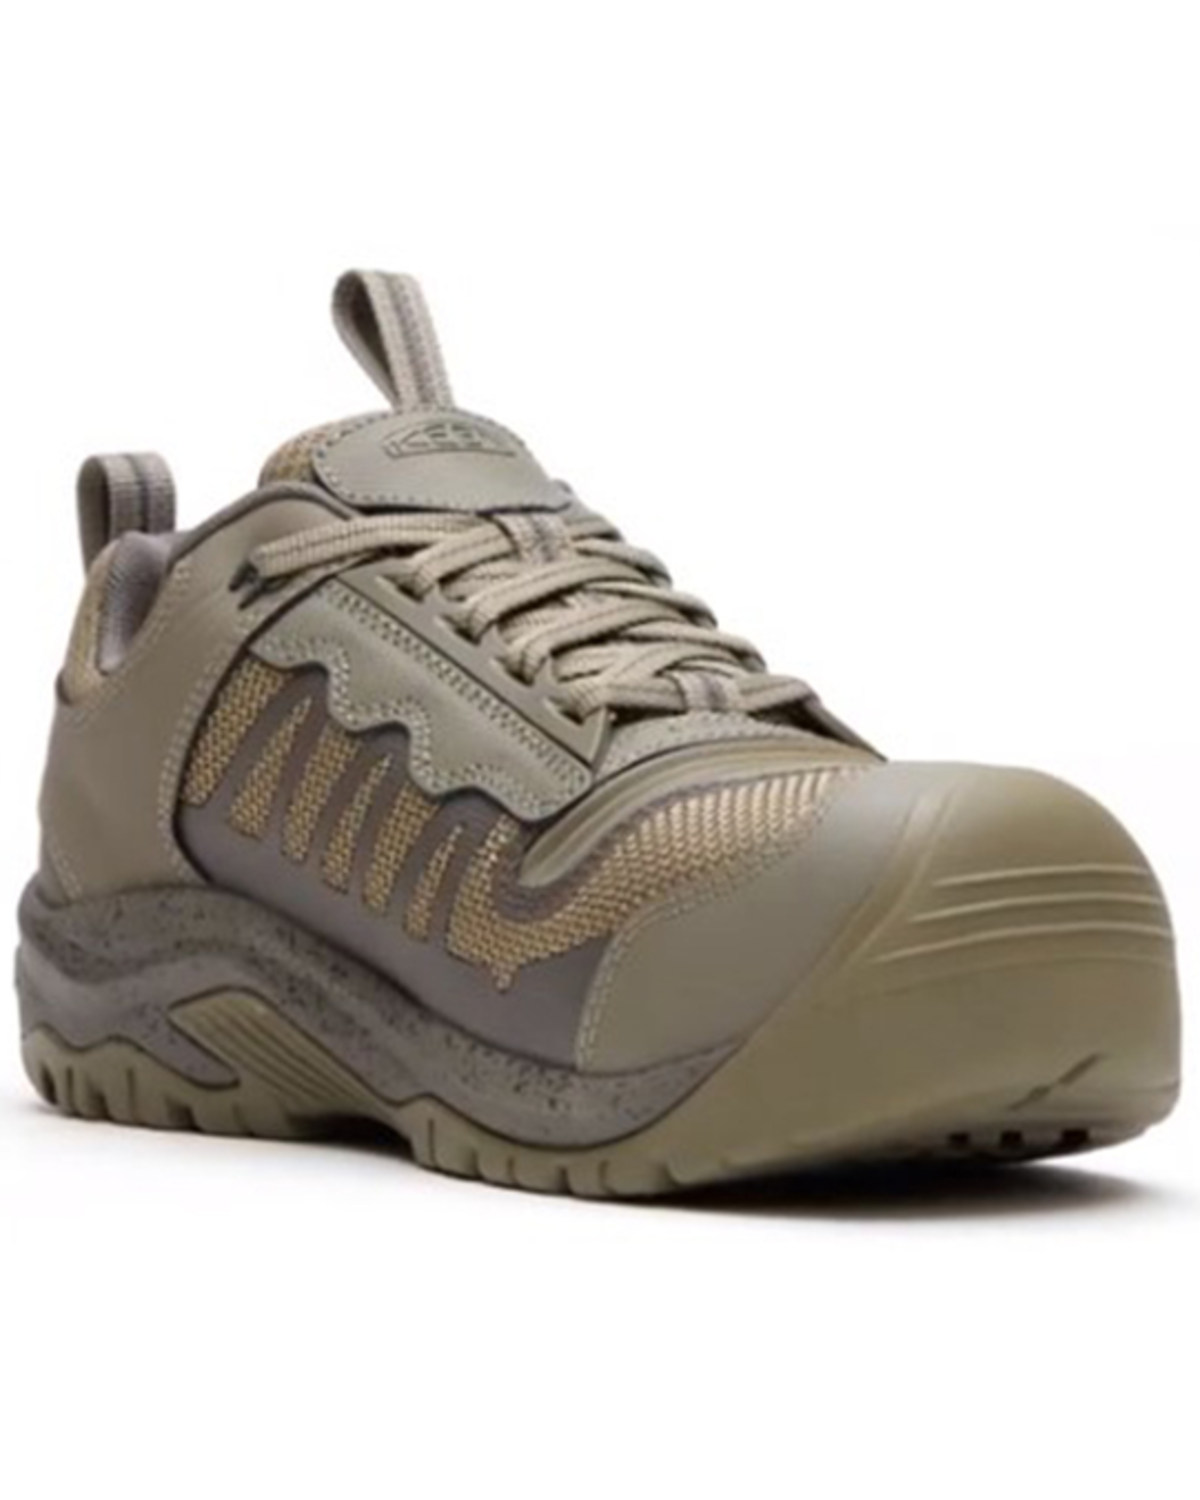 Keen Men's Reno Low Waterproof Work Shoes - Composite Toe